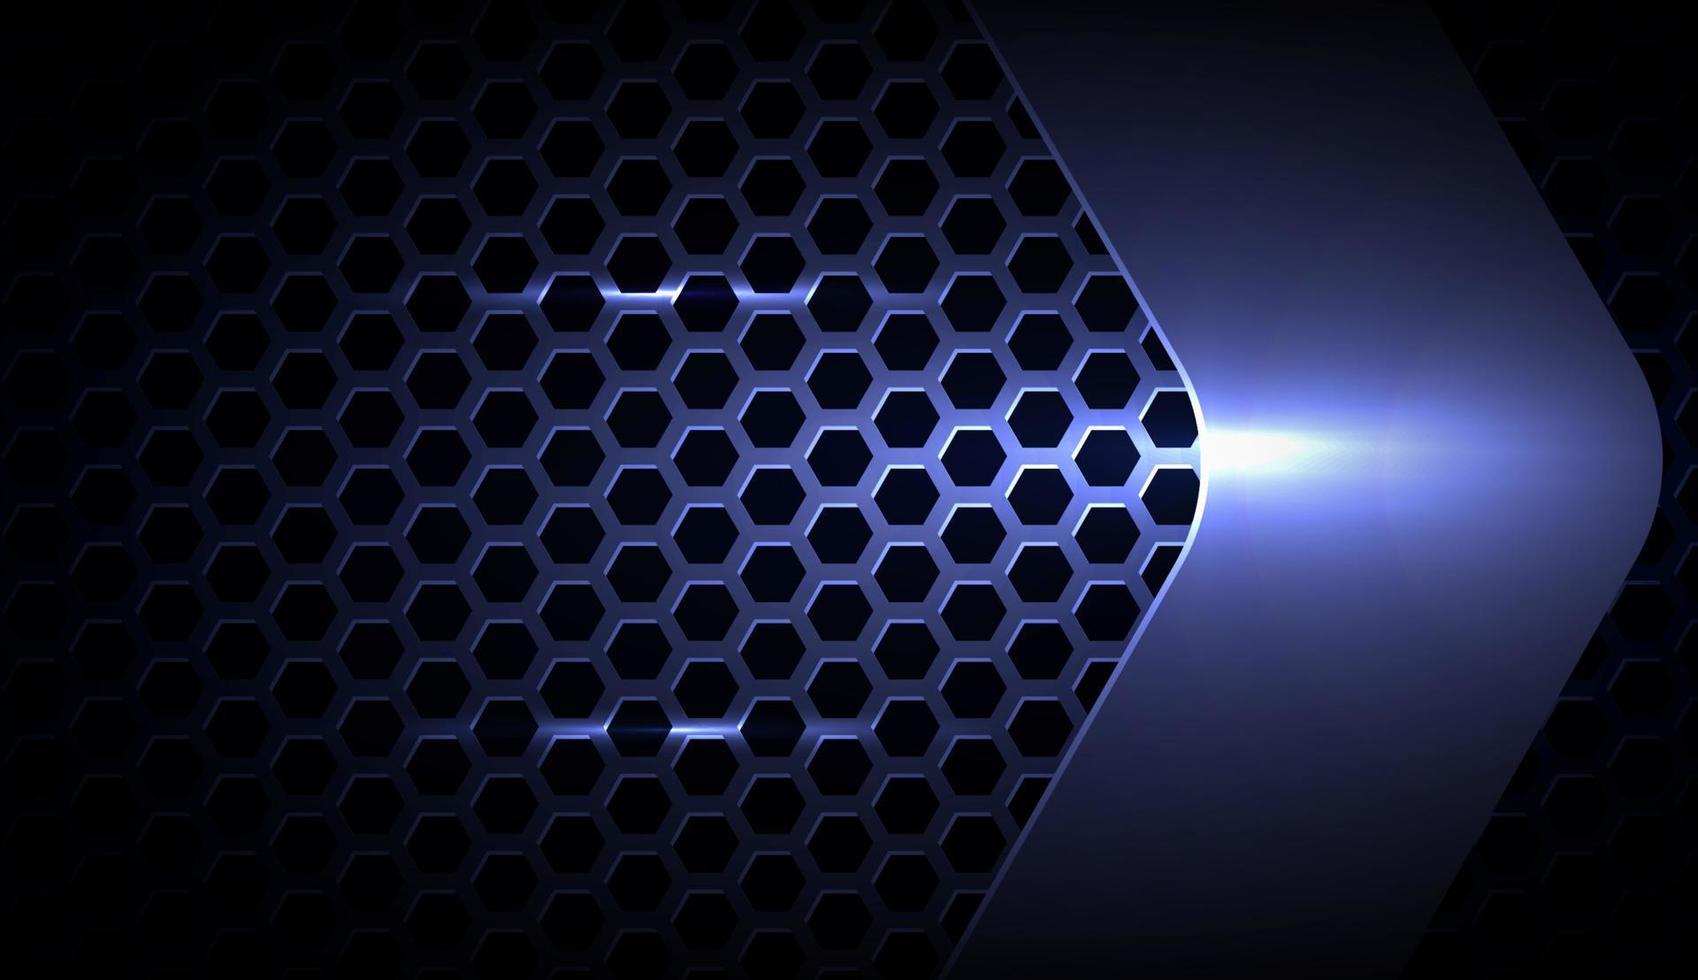 abstract metallic blauw zilver overlap lagen element. met hexagon patroon realistisch effect met licht decoratie frame lay-out ontwerp tech innovatie concept gaming achtergrond ruimte aan voor tekst vector